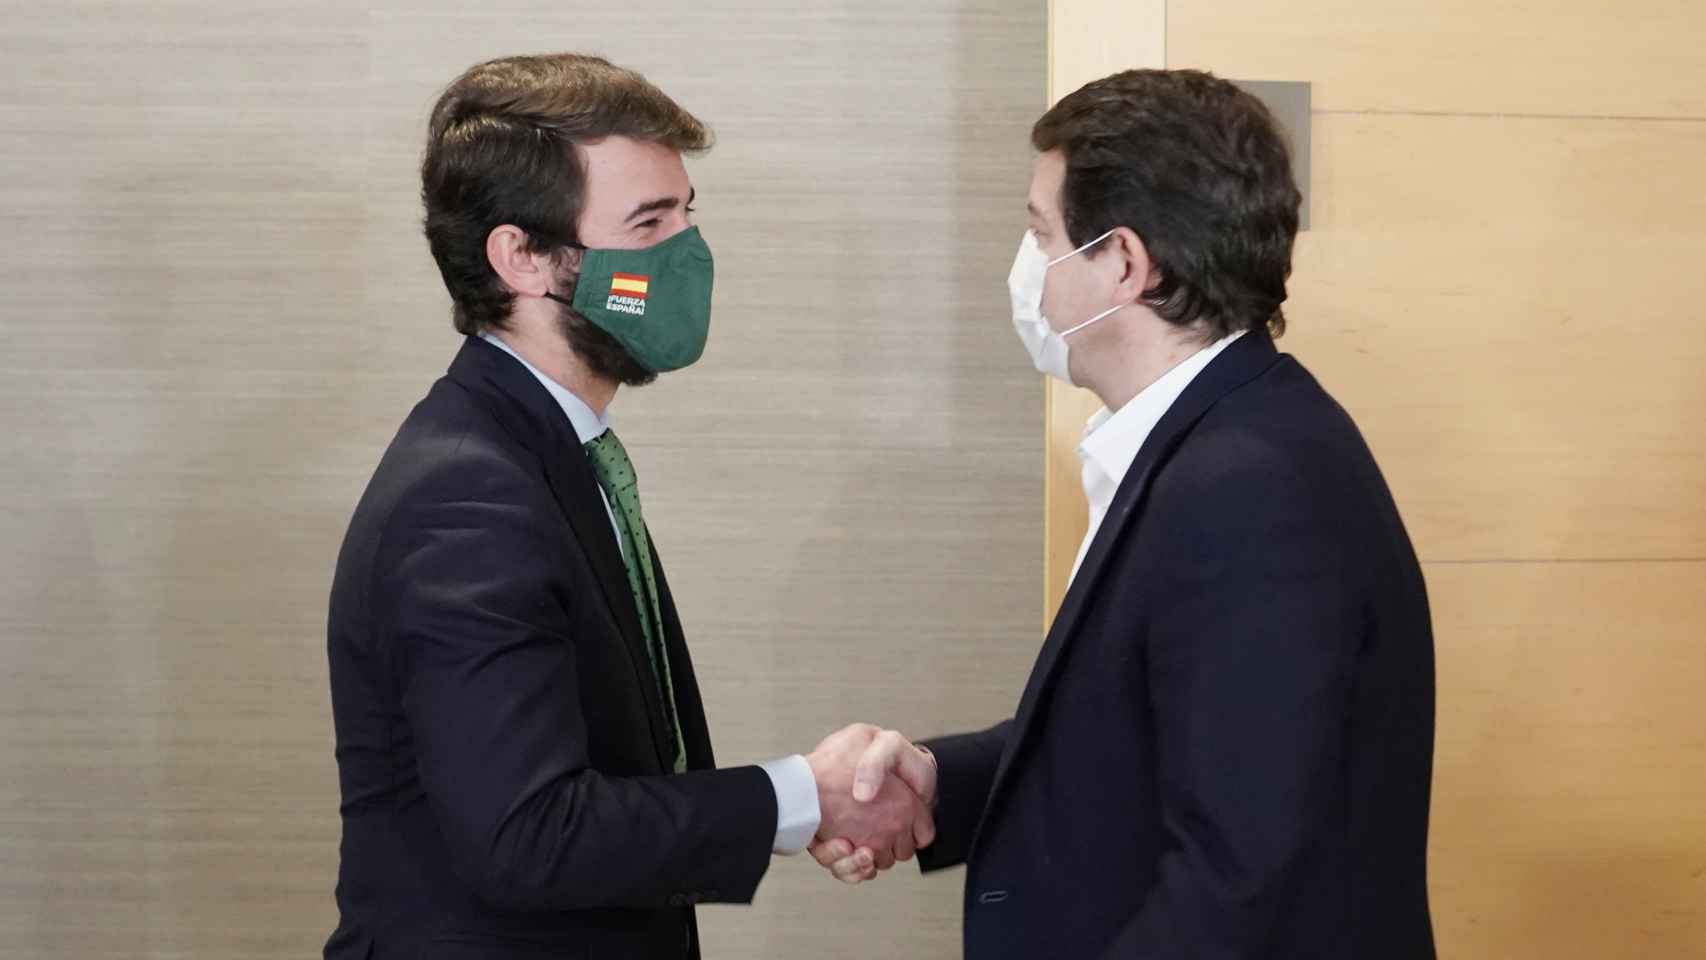 El presidente del PP, Alfonso Fernández Mañueco, se reúne con el candidato de Vox, Juan García-Gallardo, dentro de la ronda de contactos para conformar gobierno / Rubén Cacho ICAL